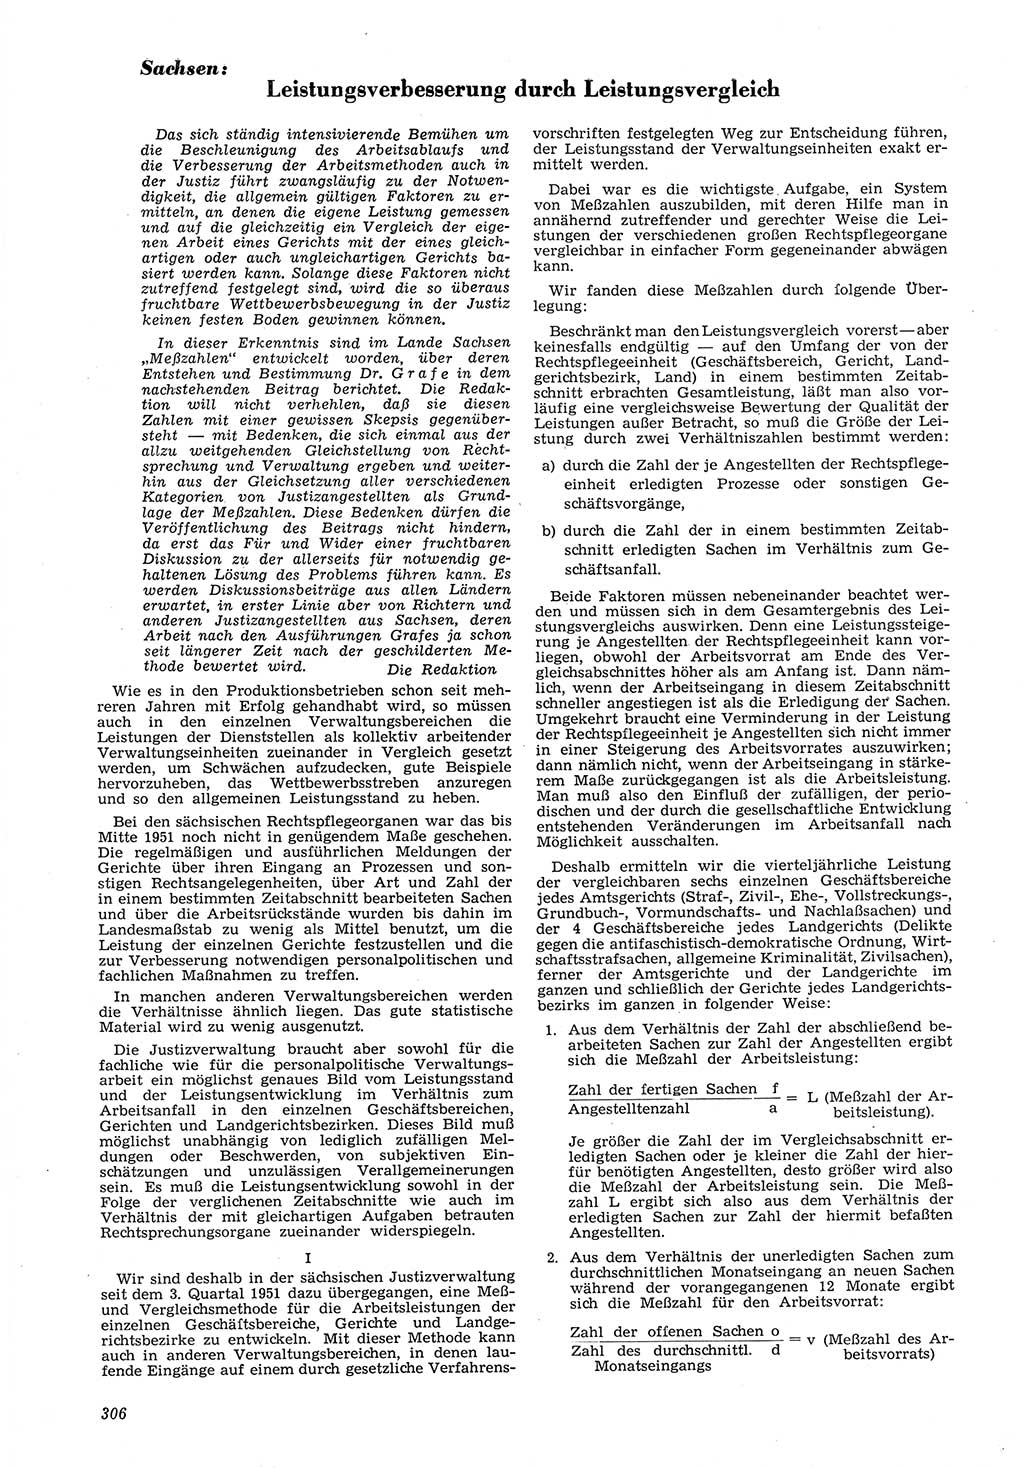 Neue Justiz (NJ), Zeitschrift für Recht und Rechtswissenschaft [Deutsche Demokratische Republik (DDR)], 6. Jahrgang 1952, Seite 306 (NJ DDR 1952, S. 306)